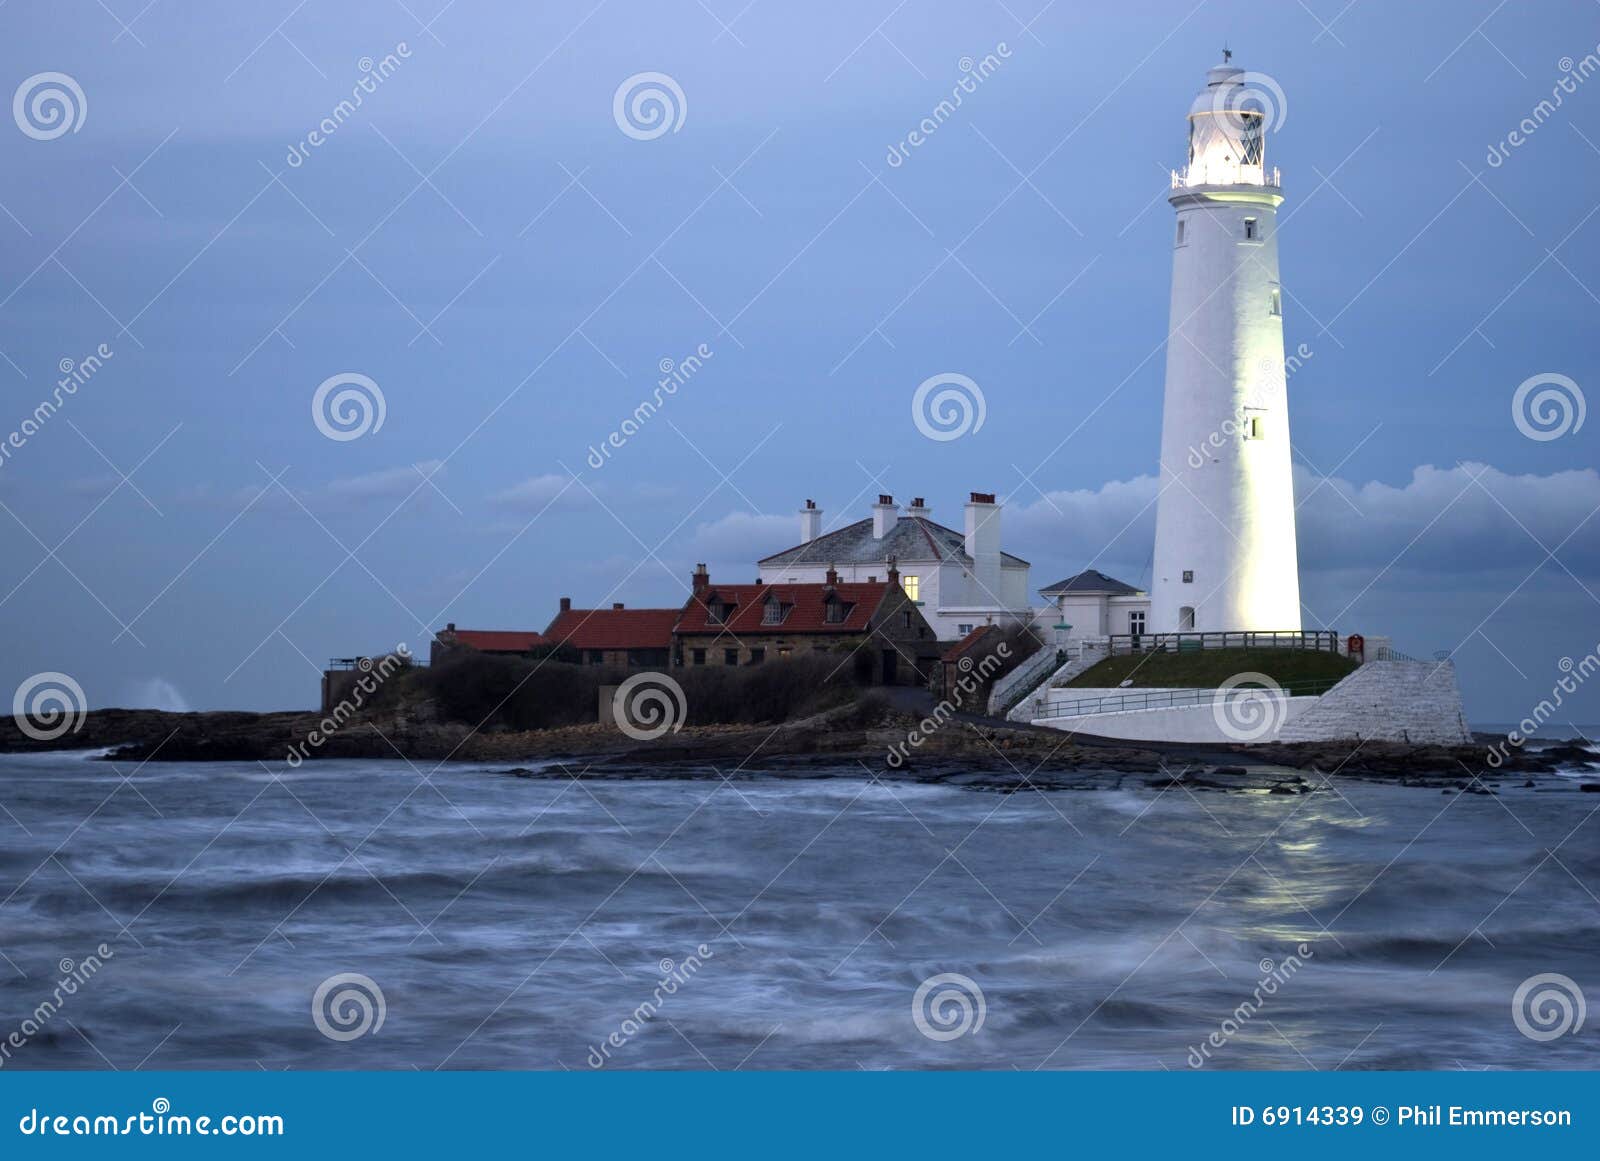 st marys lighthouse